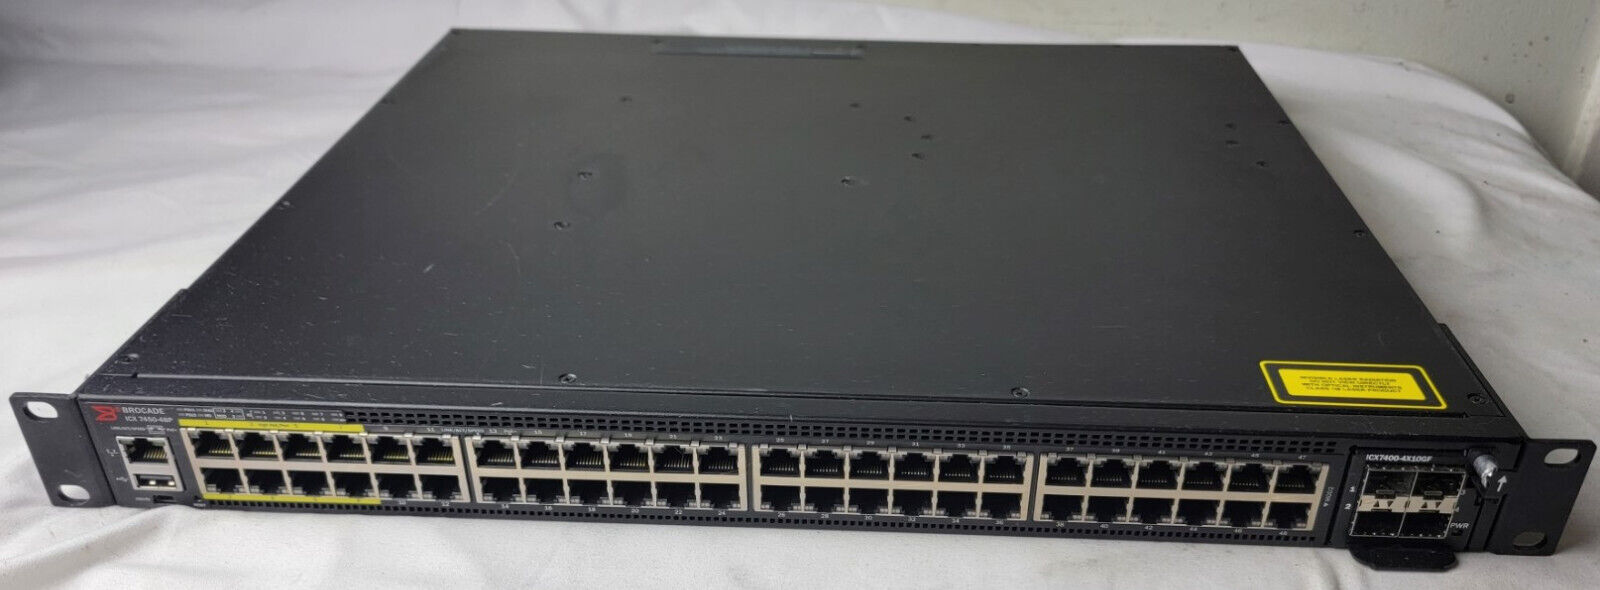 Brocade ICX7450-48P 48 Port PoE+ Gig Switch, ICX7400-4X10GF, 2x 40G w/Dual PSU 2